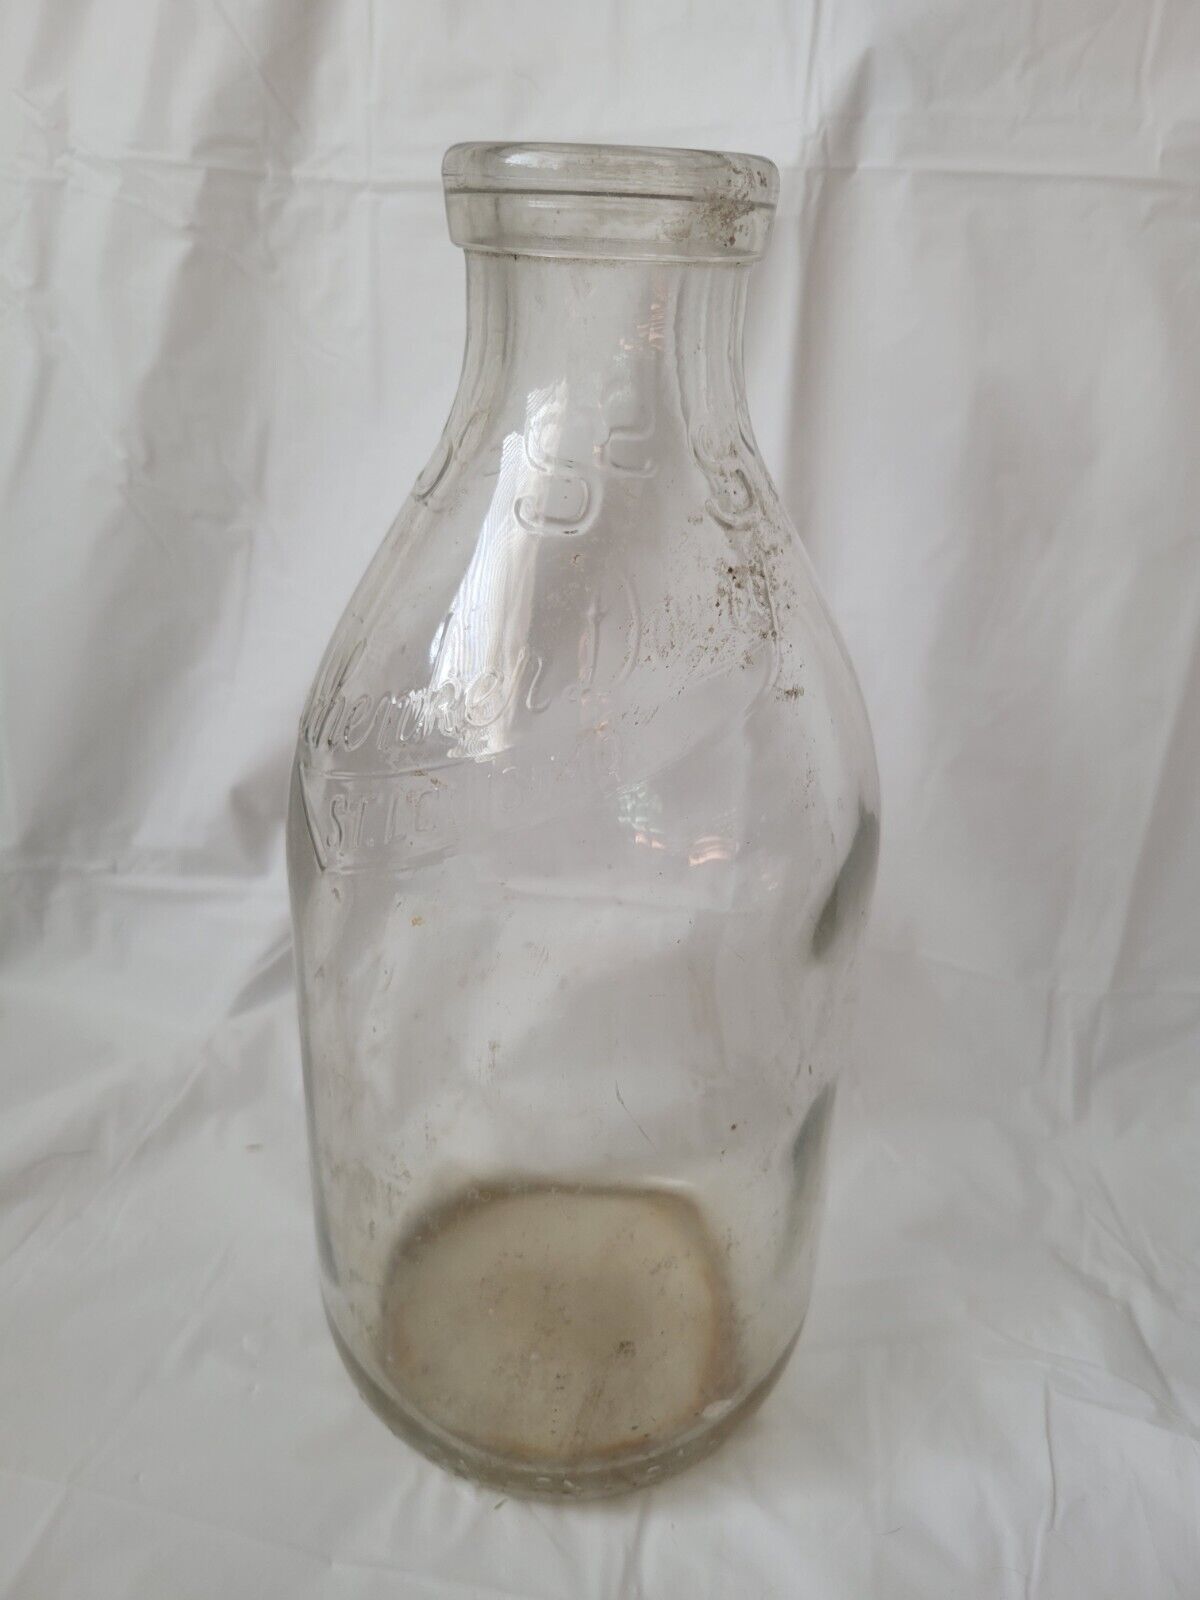 Schenker Dairy Vintage 1/2 Gallon Glass Milk Jug St. Louis MO